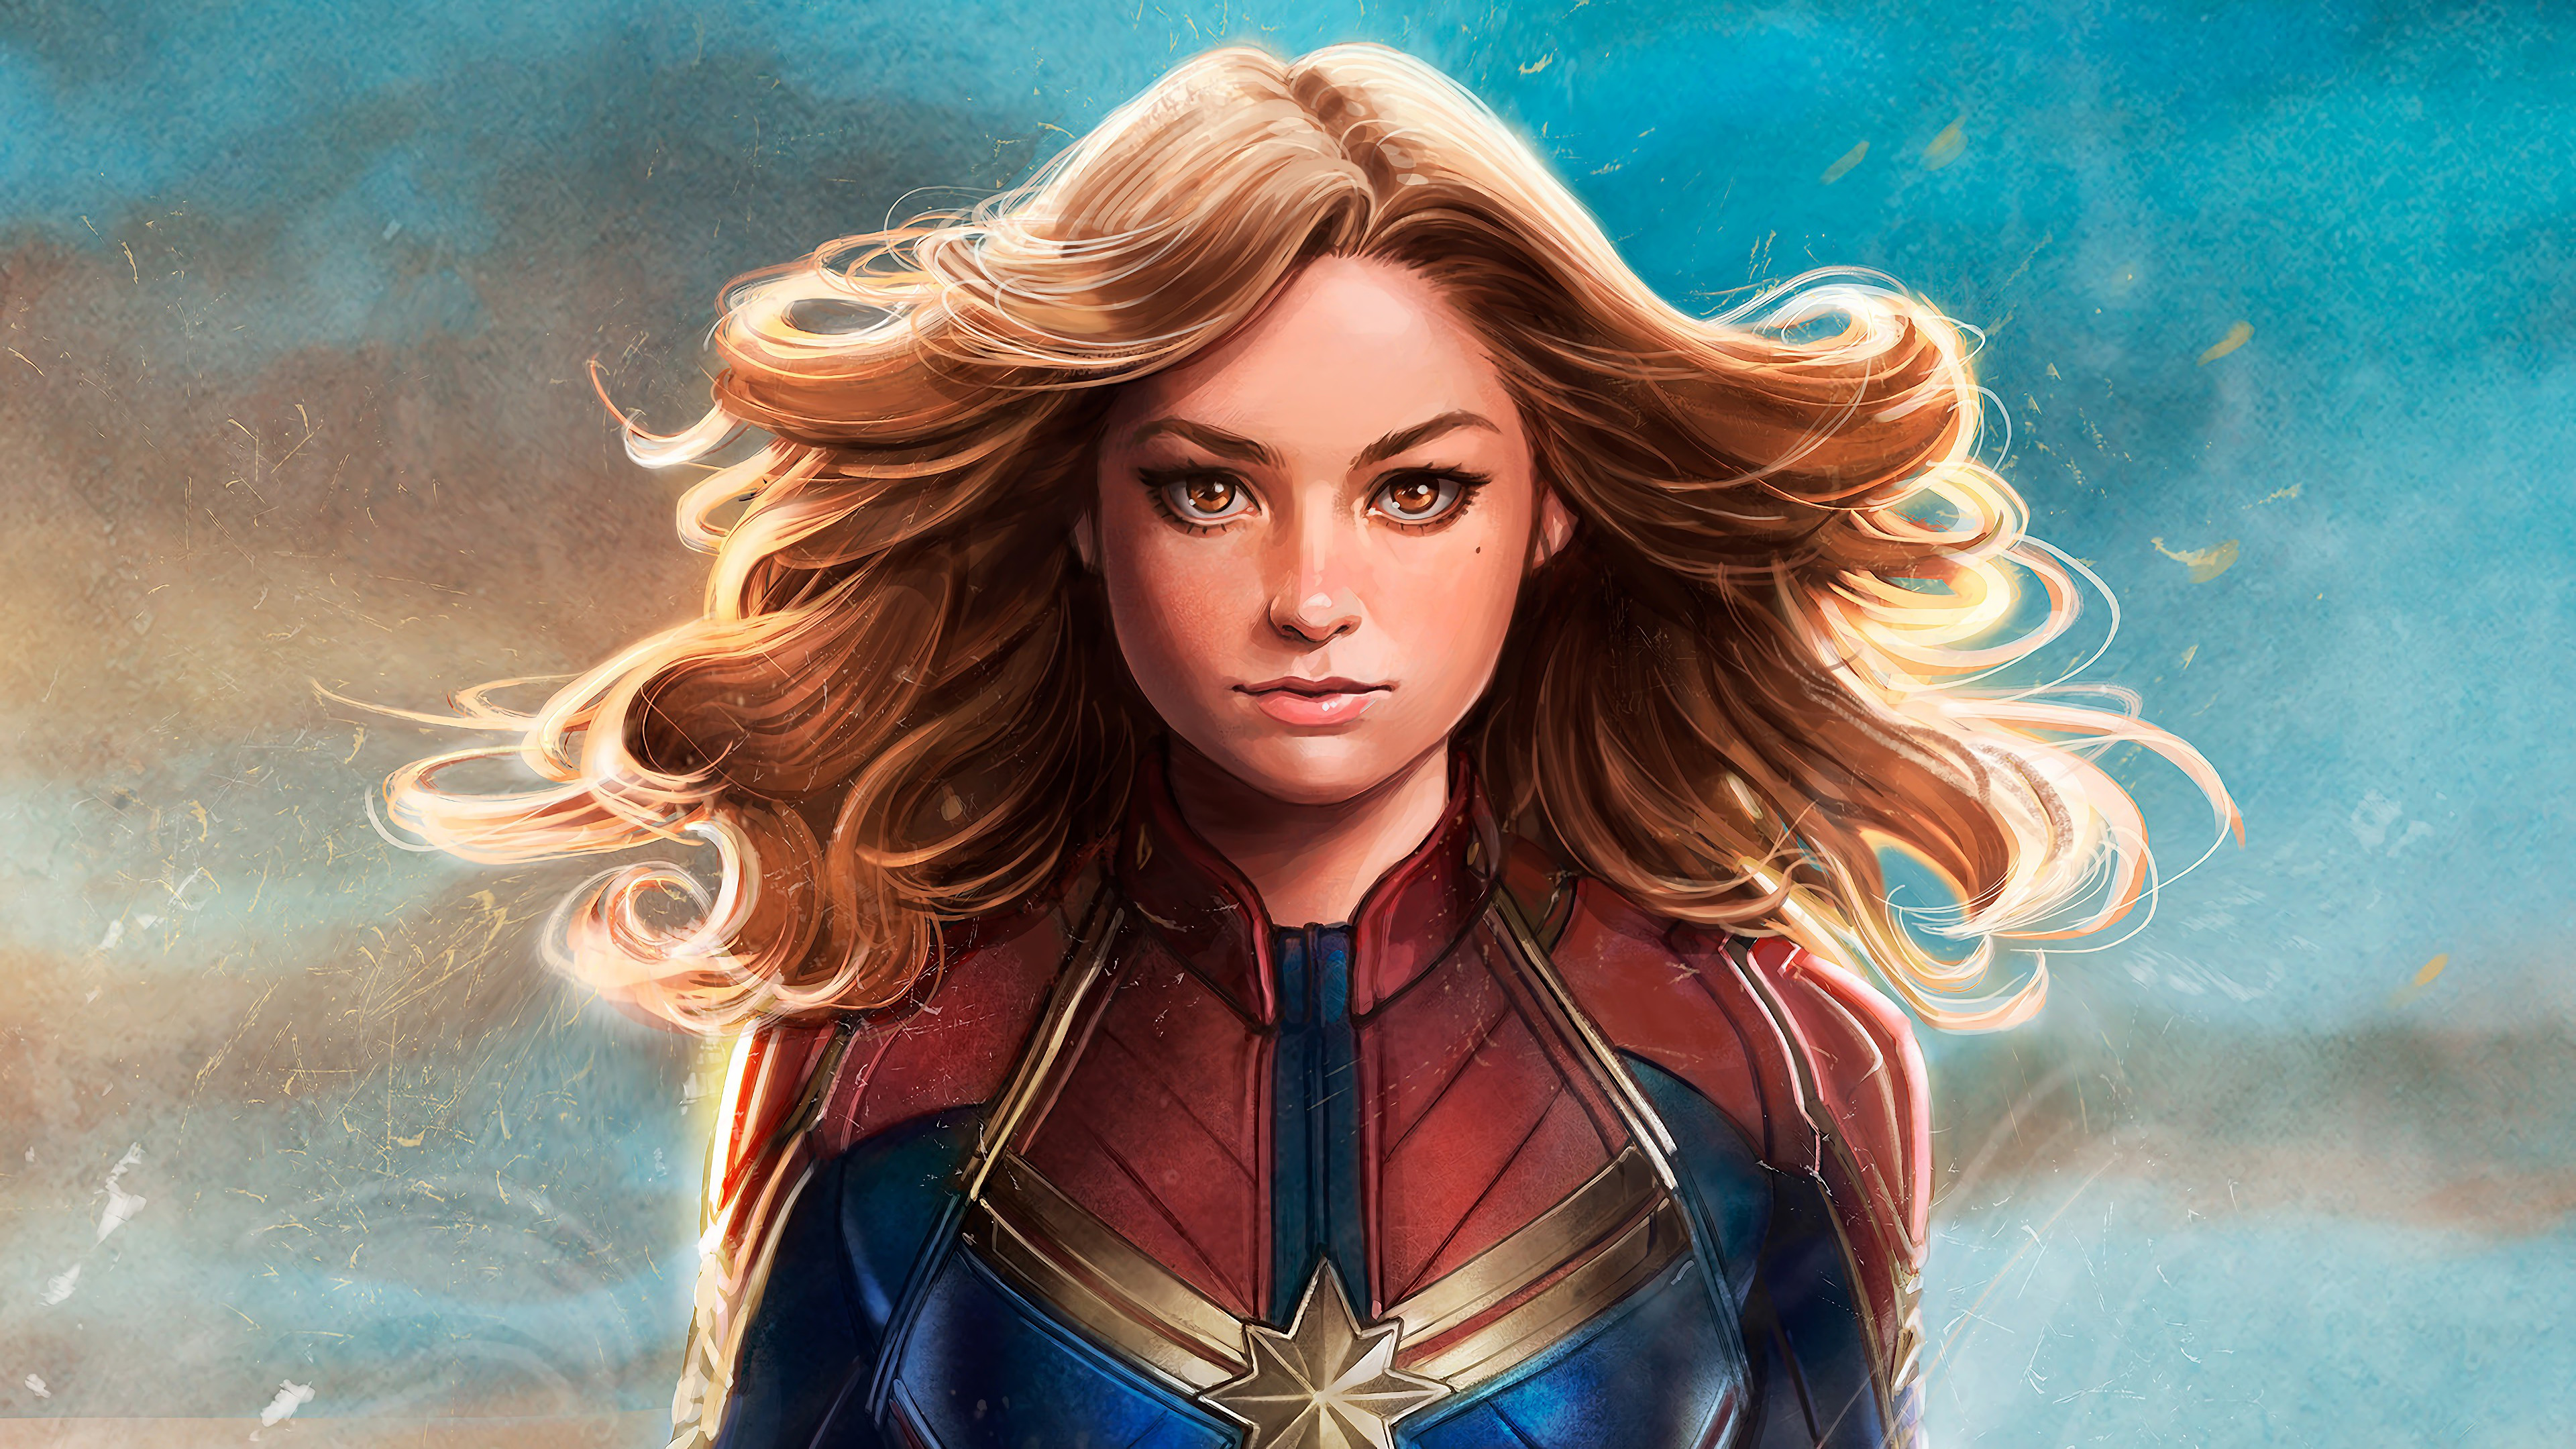 Captain Marvel 4K Wallpapers